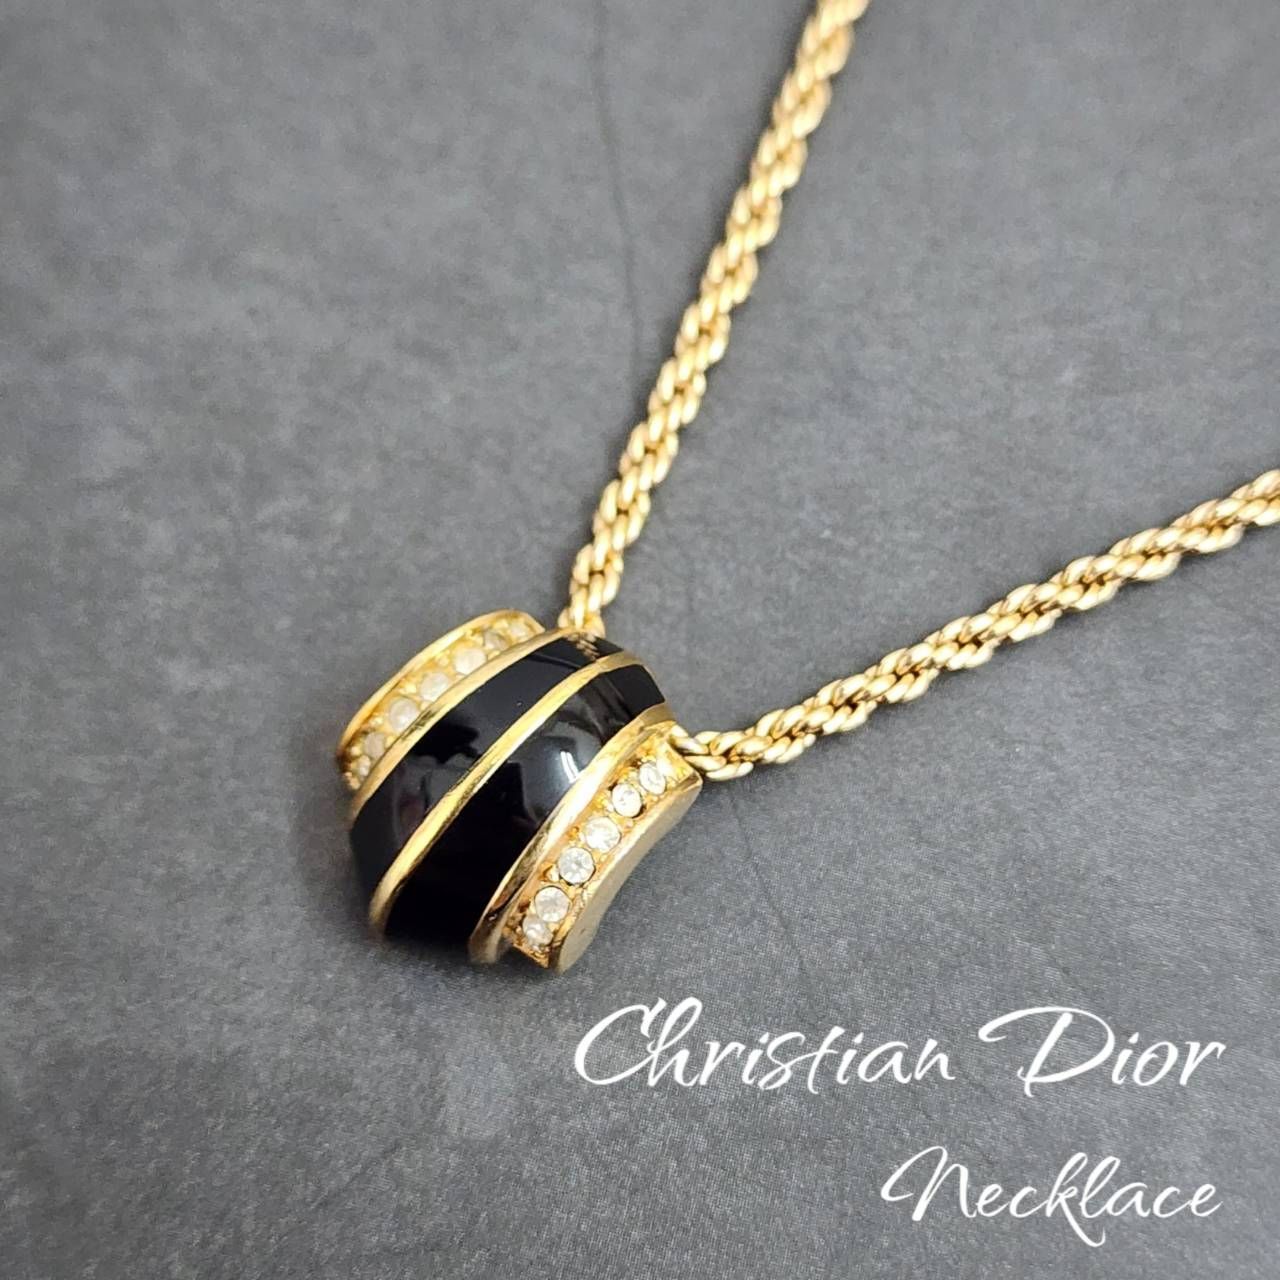 Christian Dior クリスチャンディオール ネックレス ラインストーン ブラック×ゴールドカラー アンティーク アクセサリー ヴィンテージ  ブランド小物 デザイン